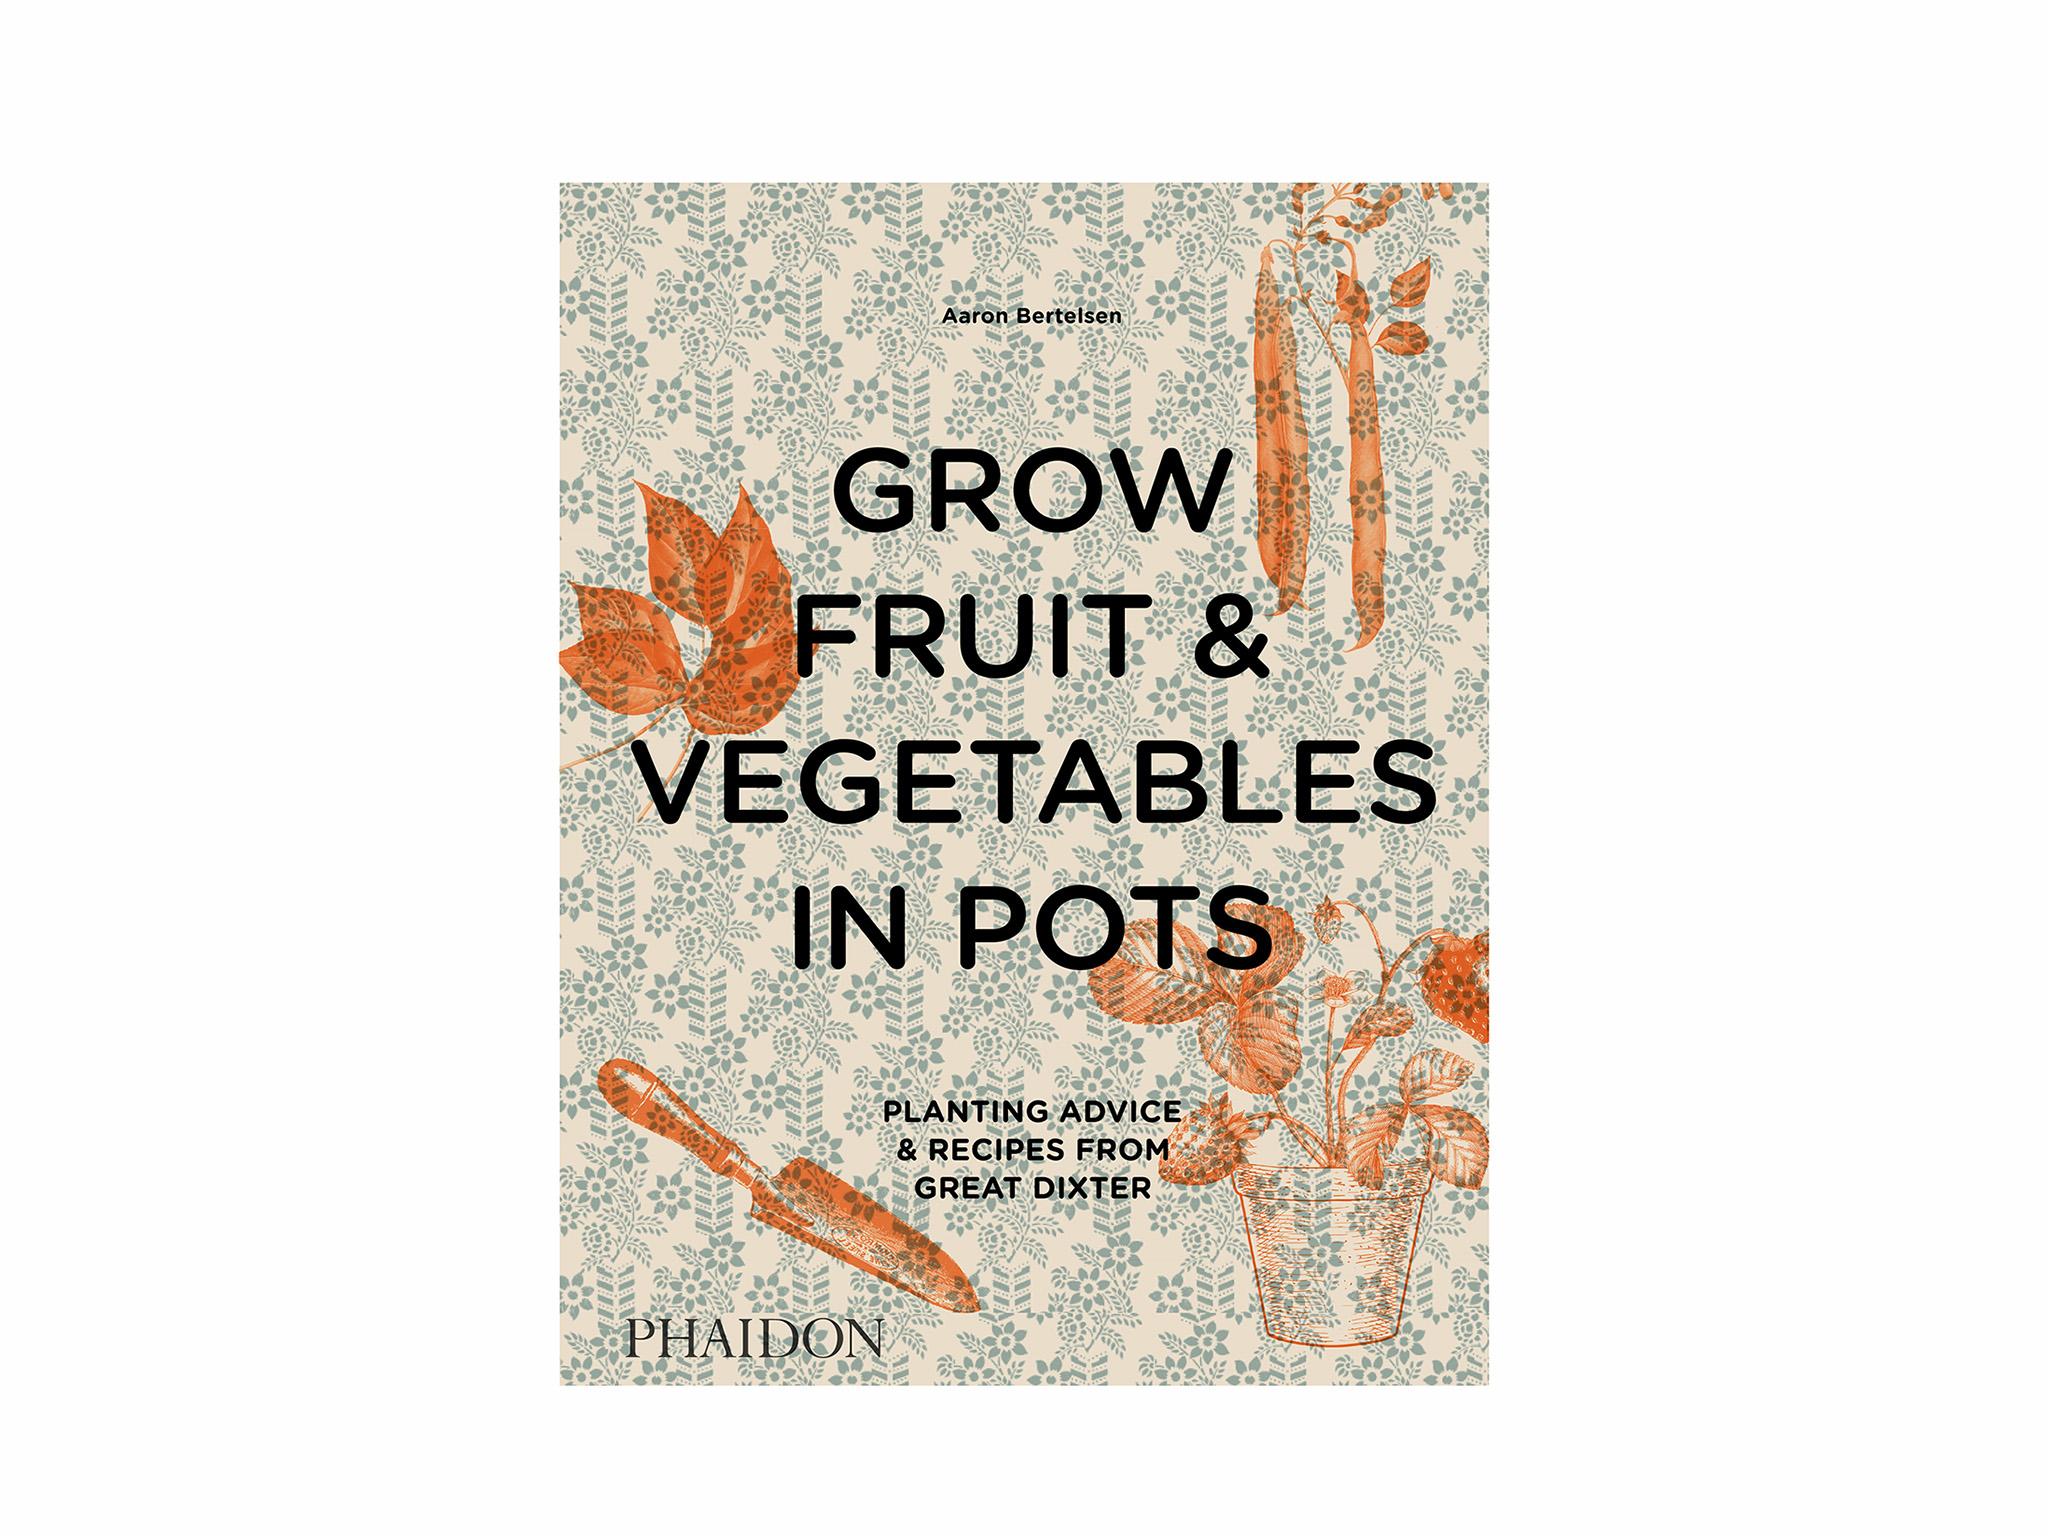 Grow Fruit & Vegetables In Pots by Aaron Bertlesman indybest gardening windowsill 